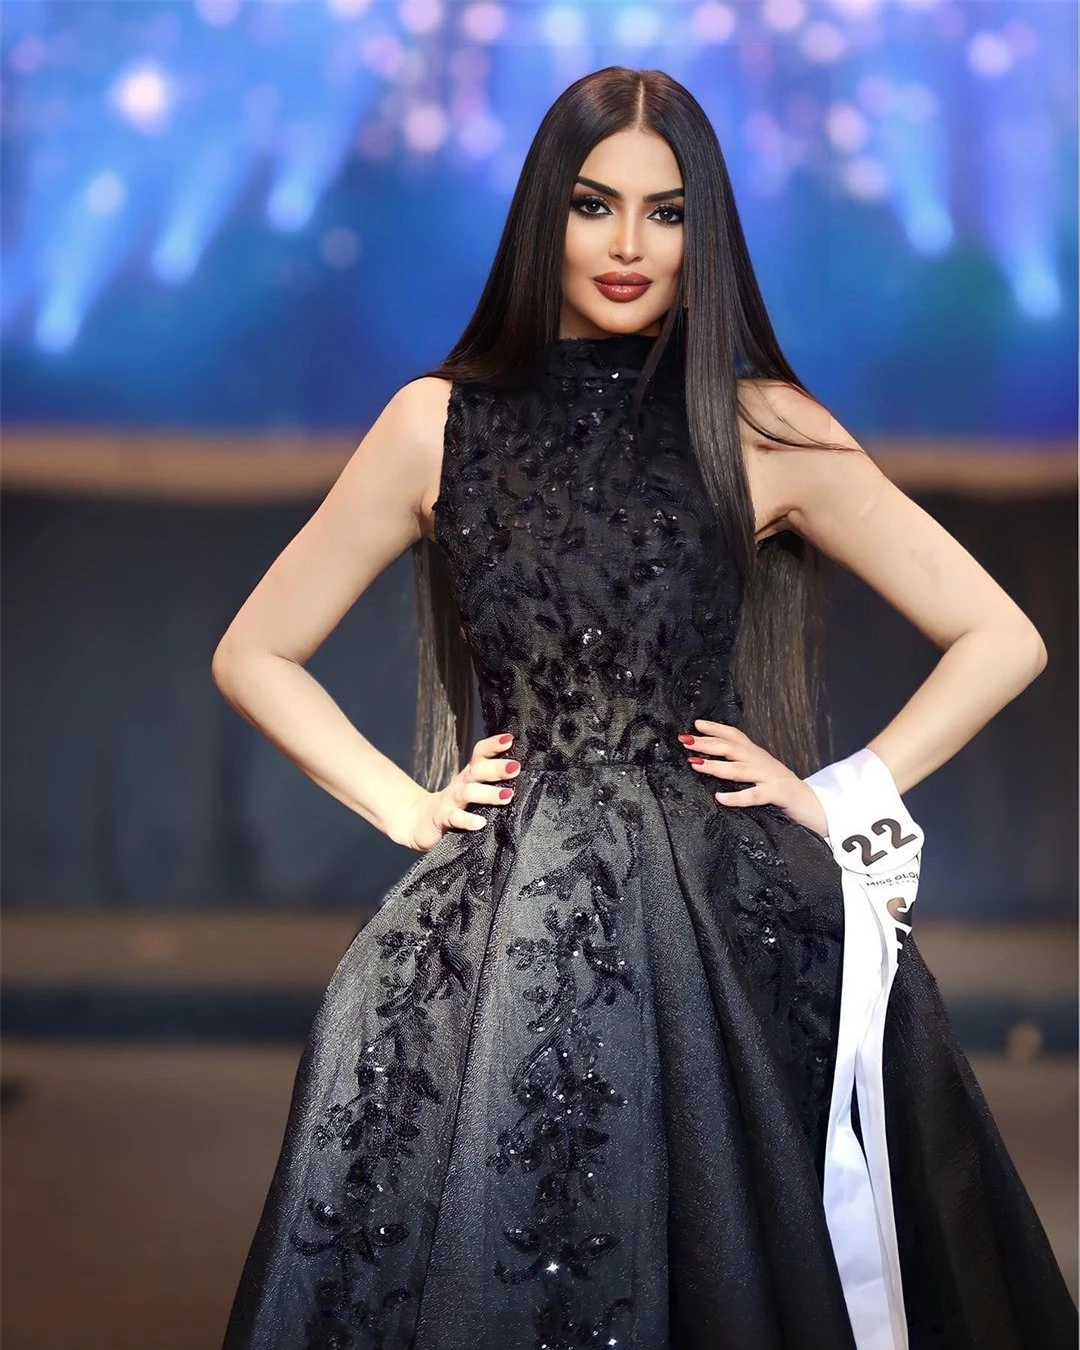 Nhan sắc gây tranh cãi của người đẹp Saudi Arabia đầu tiên thi Hoa hậu Hoàn vũ ảnh 11